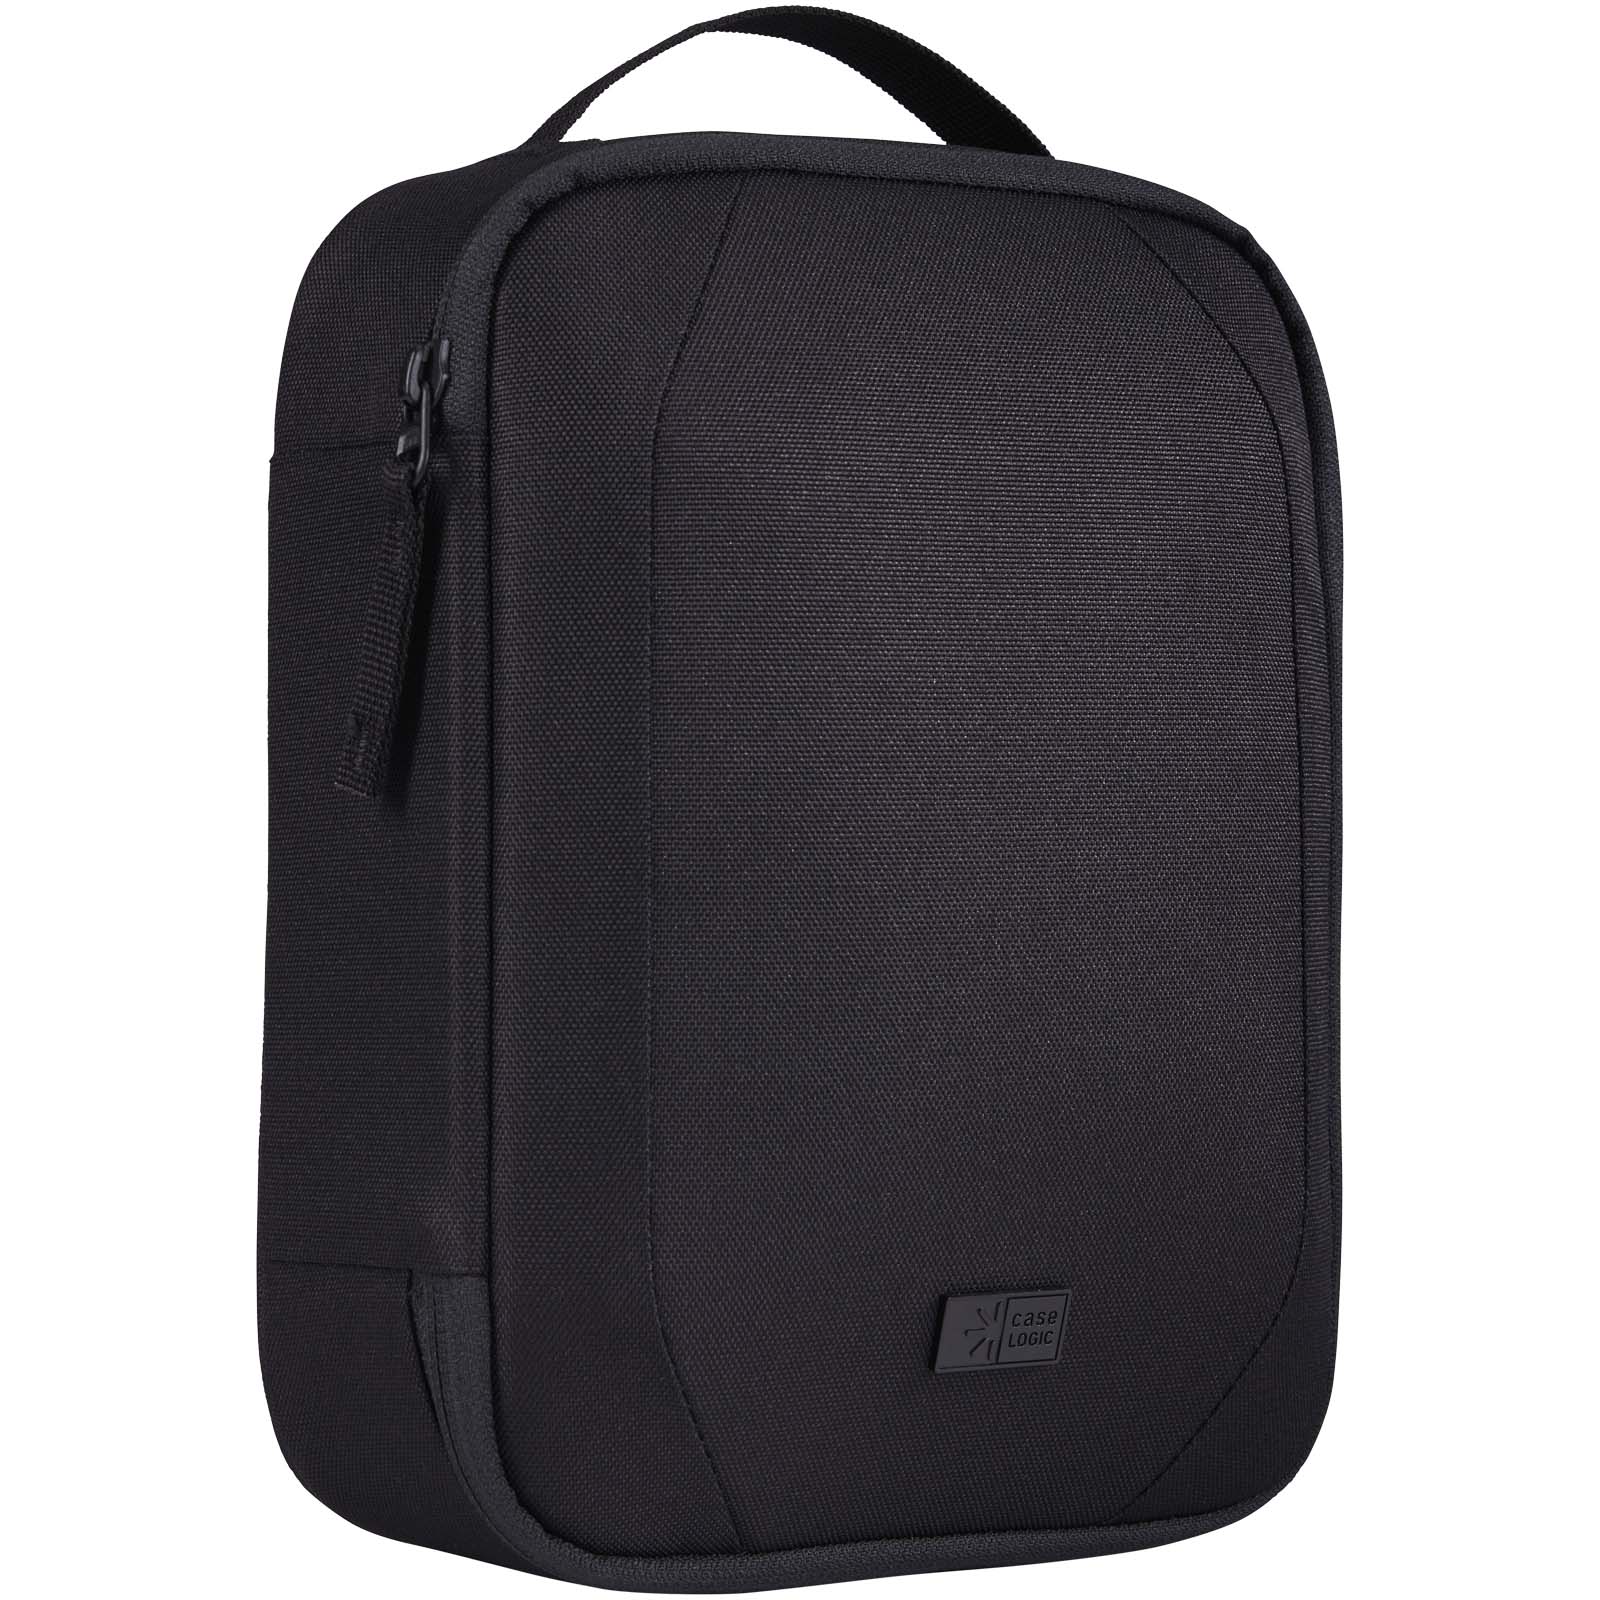 Travel Accessories - Case Logic Invigo accessories bag